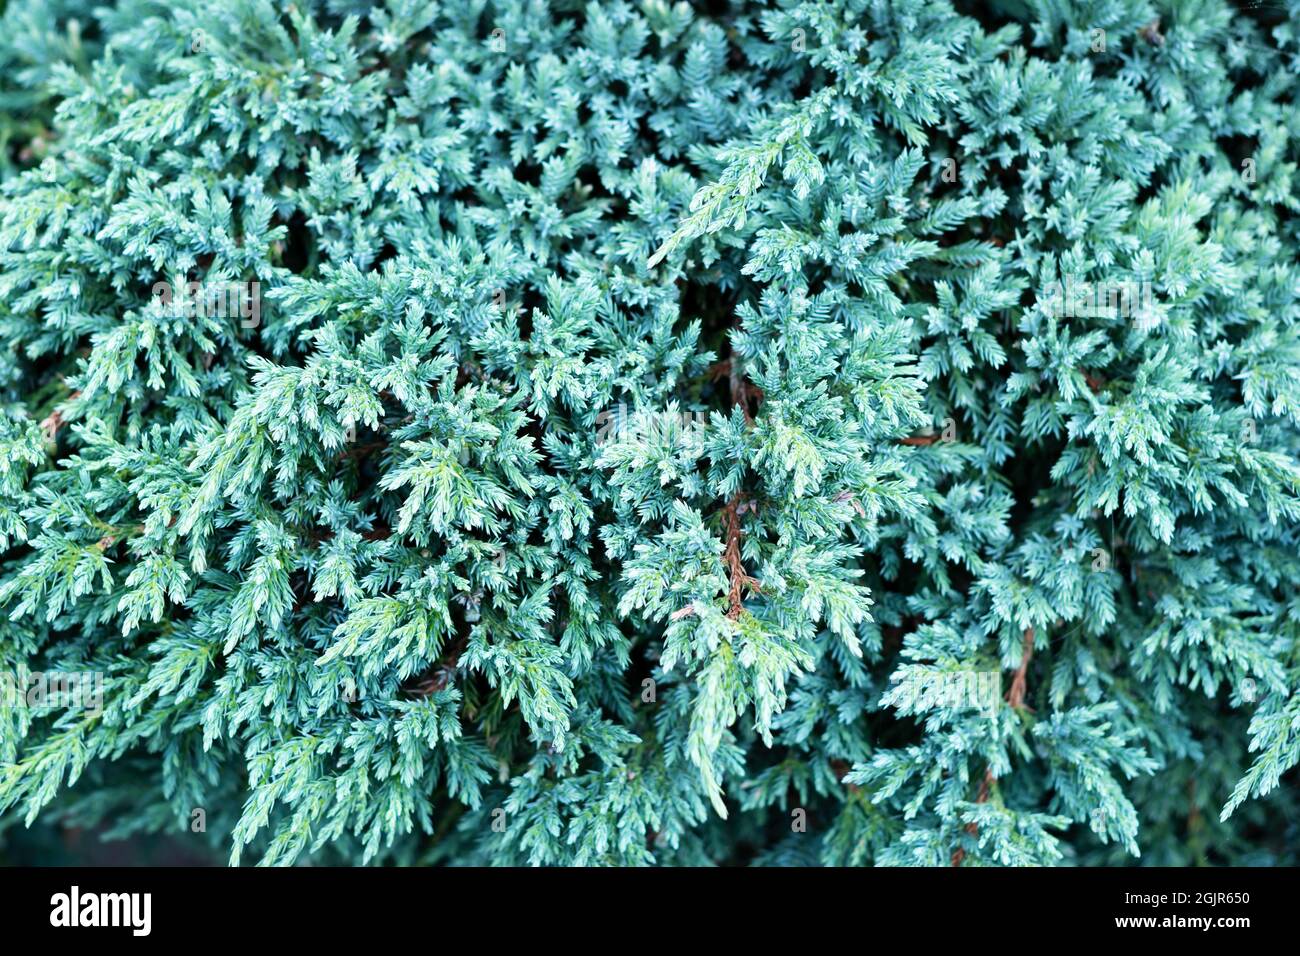 Textur des blauen juniperus squamata Sterns. Wacholderpflanze mit blauem Teppich oder Himalaya-Wacholder. Weihnachten Hintergrund. Selektiver Fokus Stockfoto